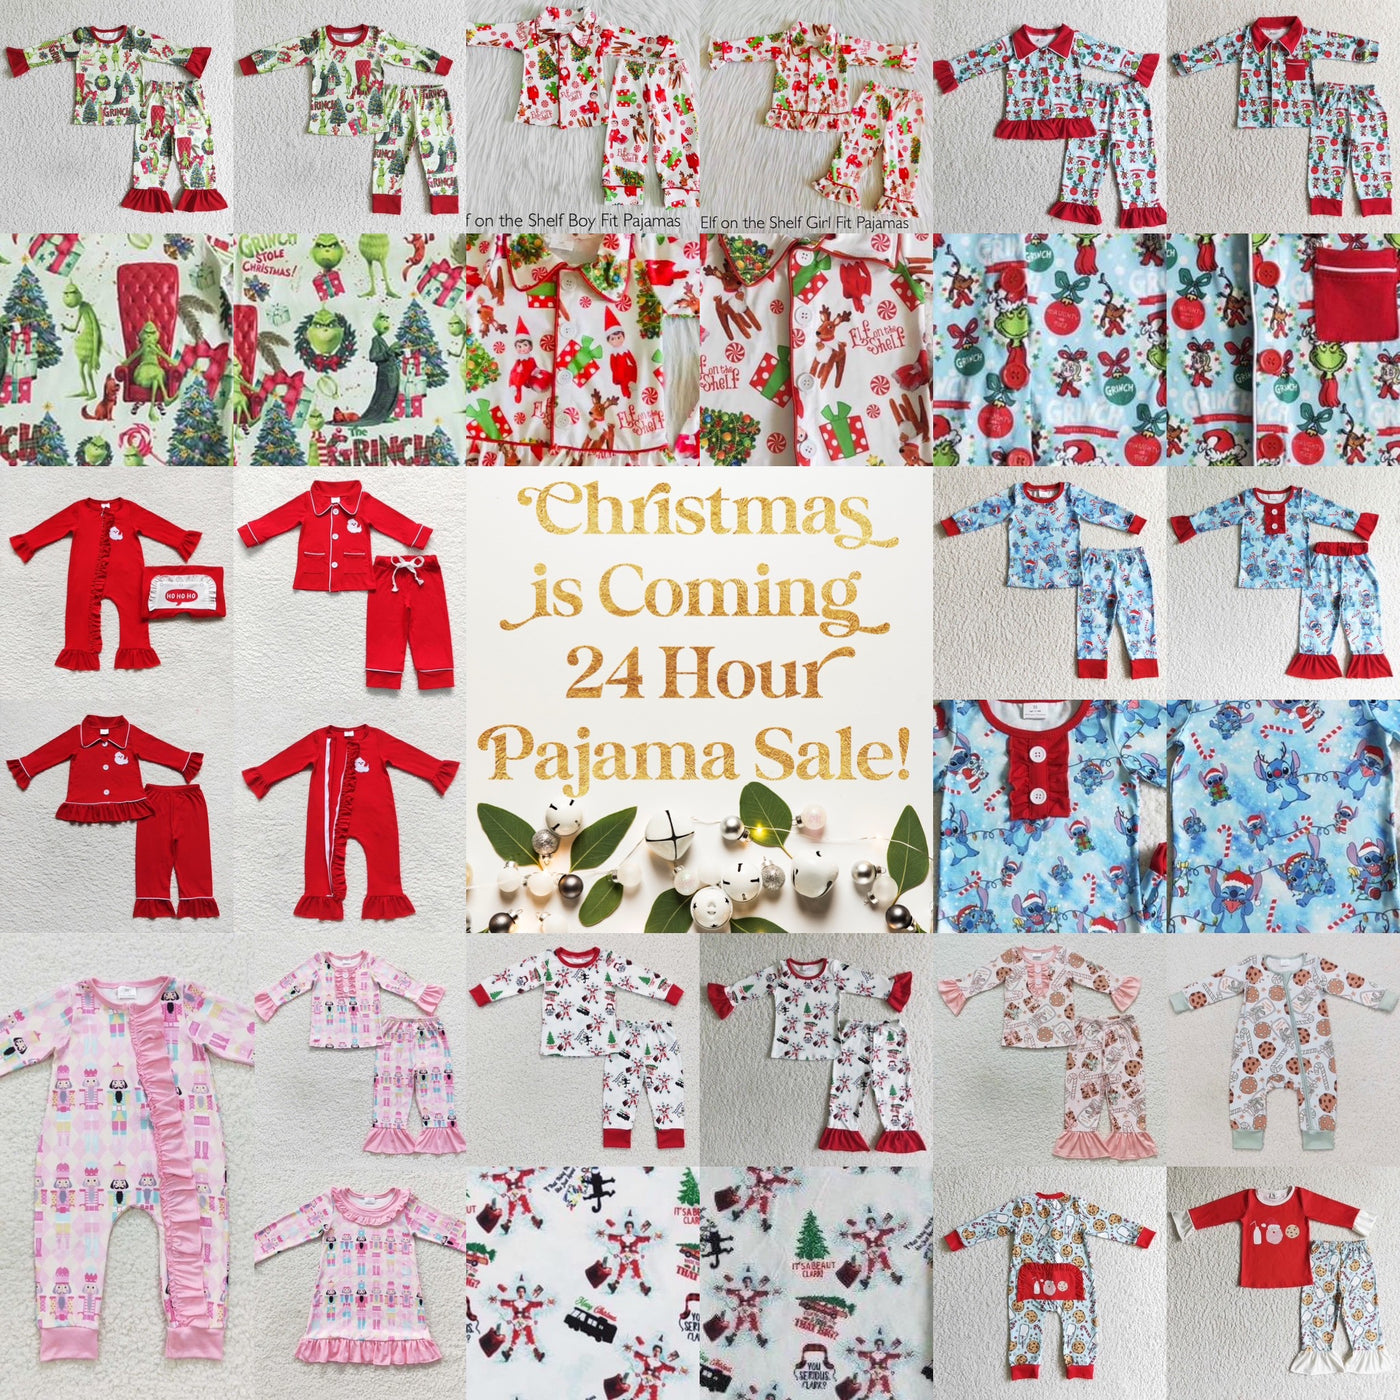 Christmas is Coming 24 Hour Pajama Sale!